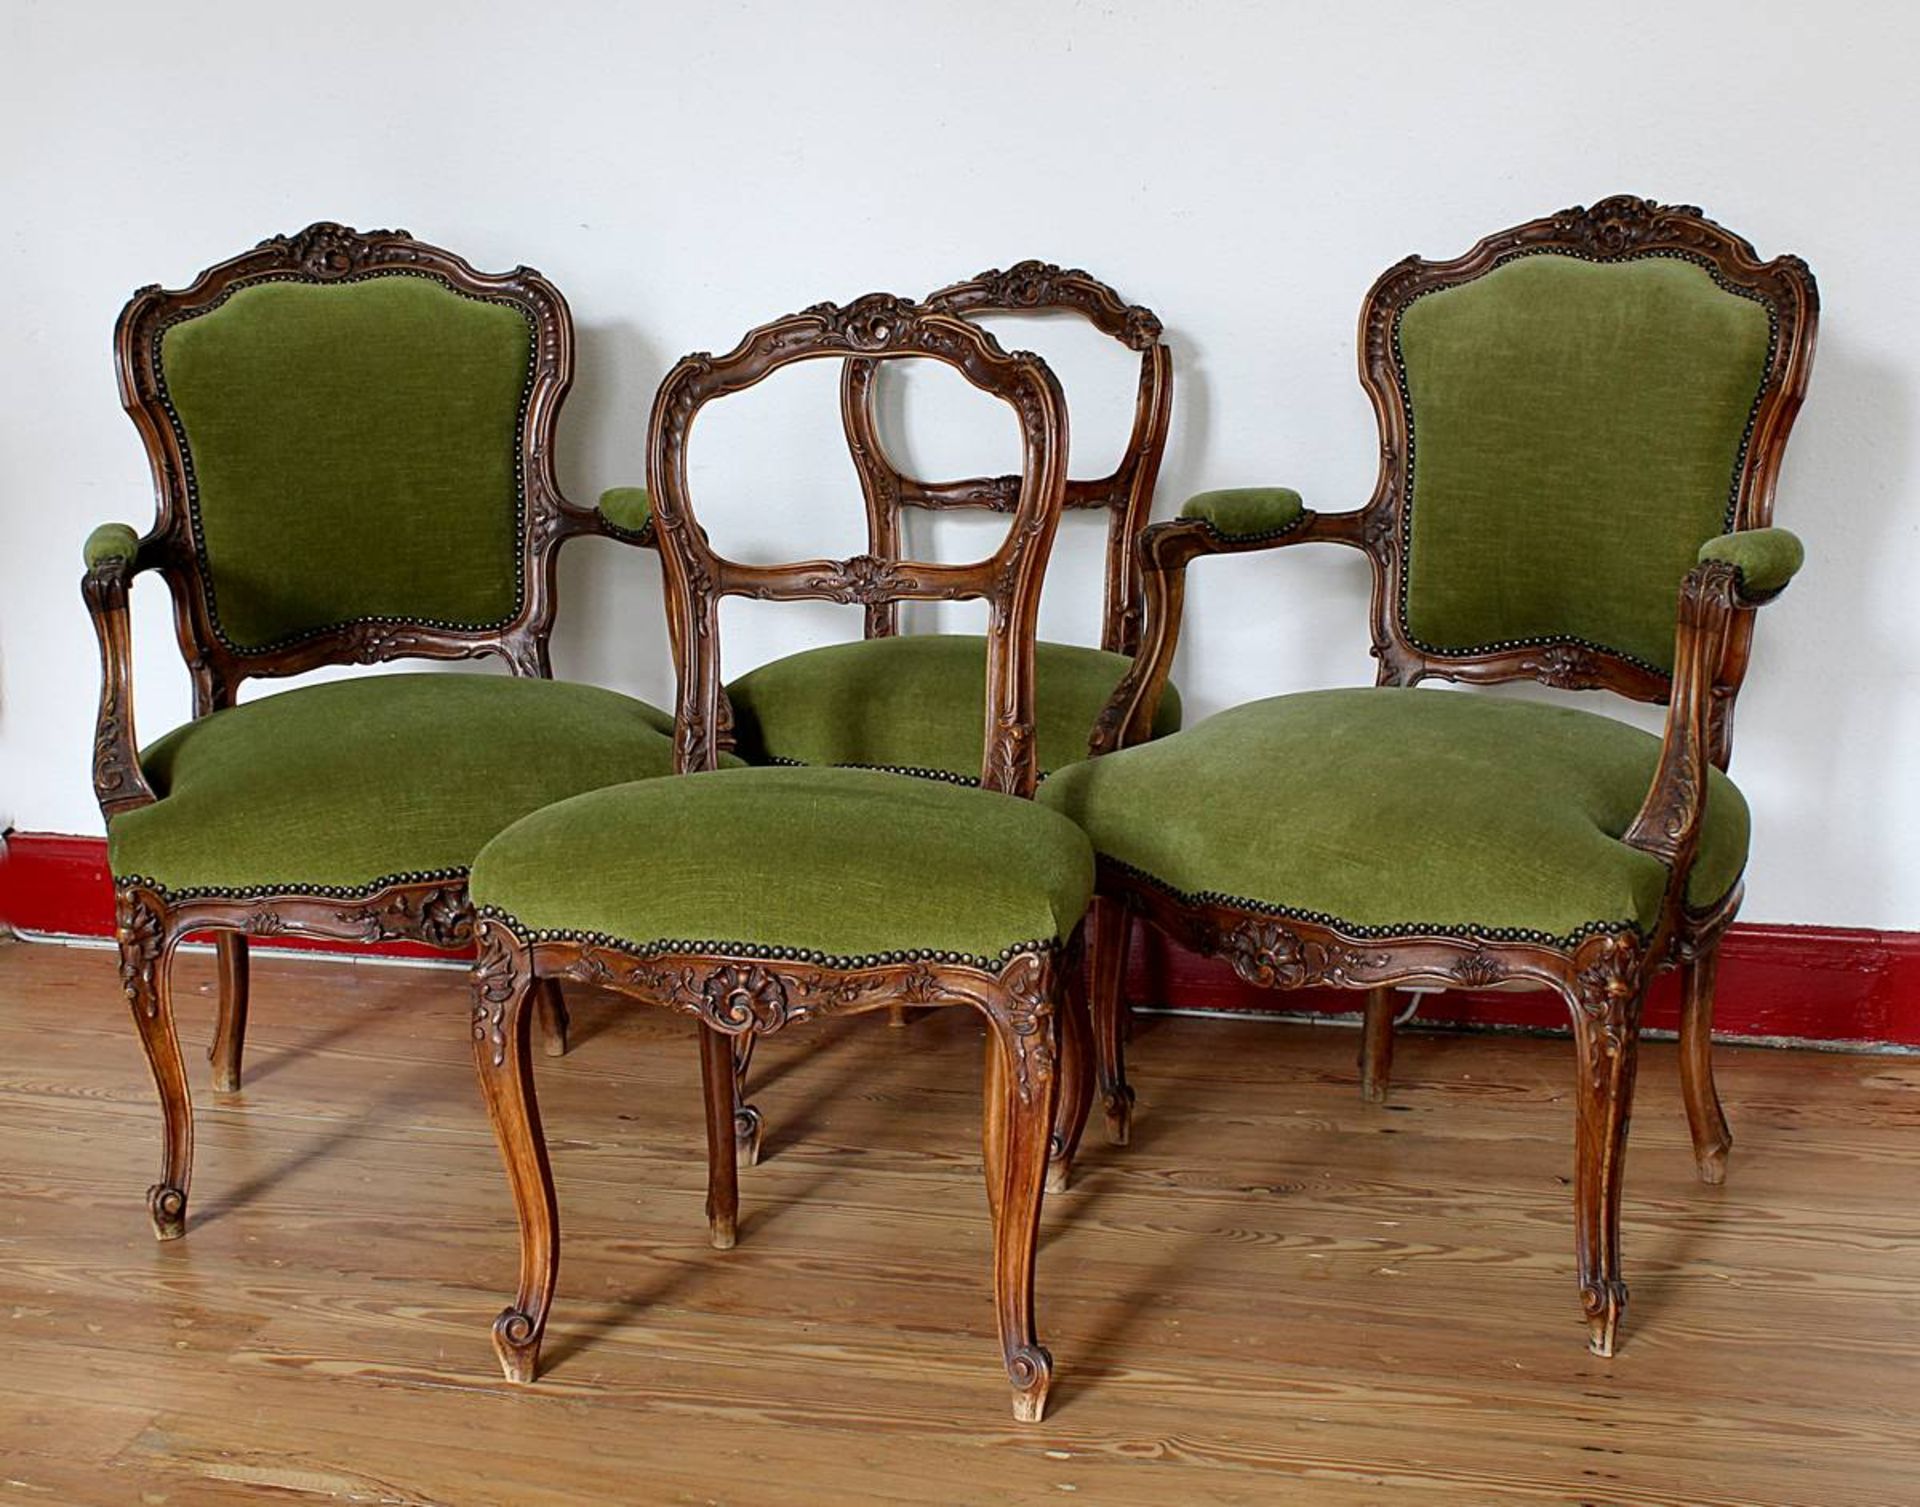 Zwei Armlehnsessel und zwei Stühle im, Rokokostil, deutsch um 1900, Nußbaum massiv, reich beschnitzt